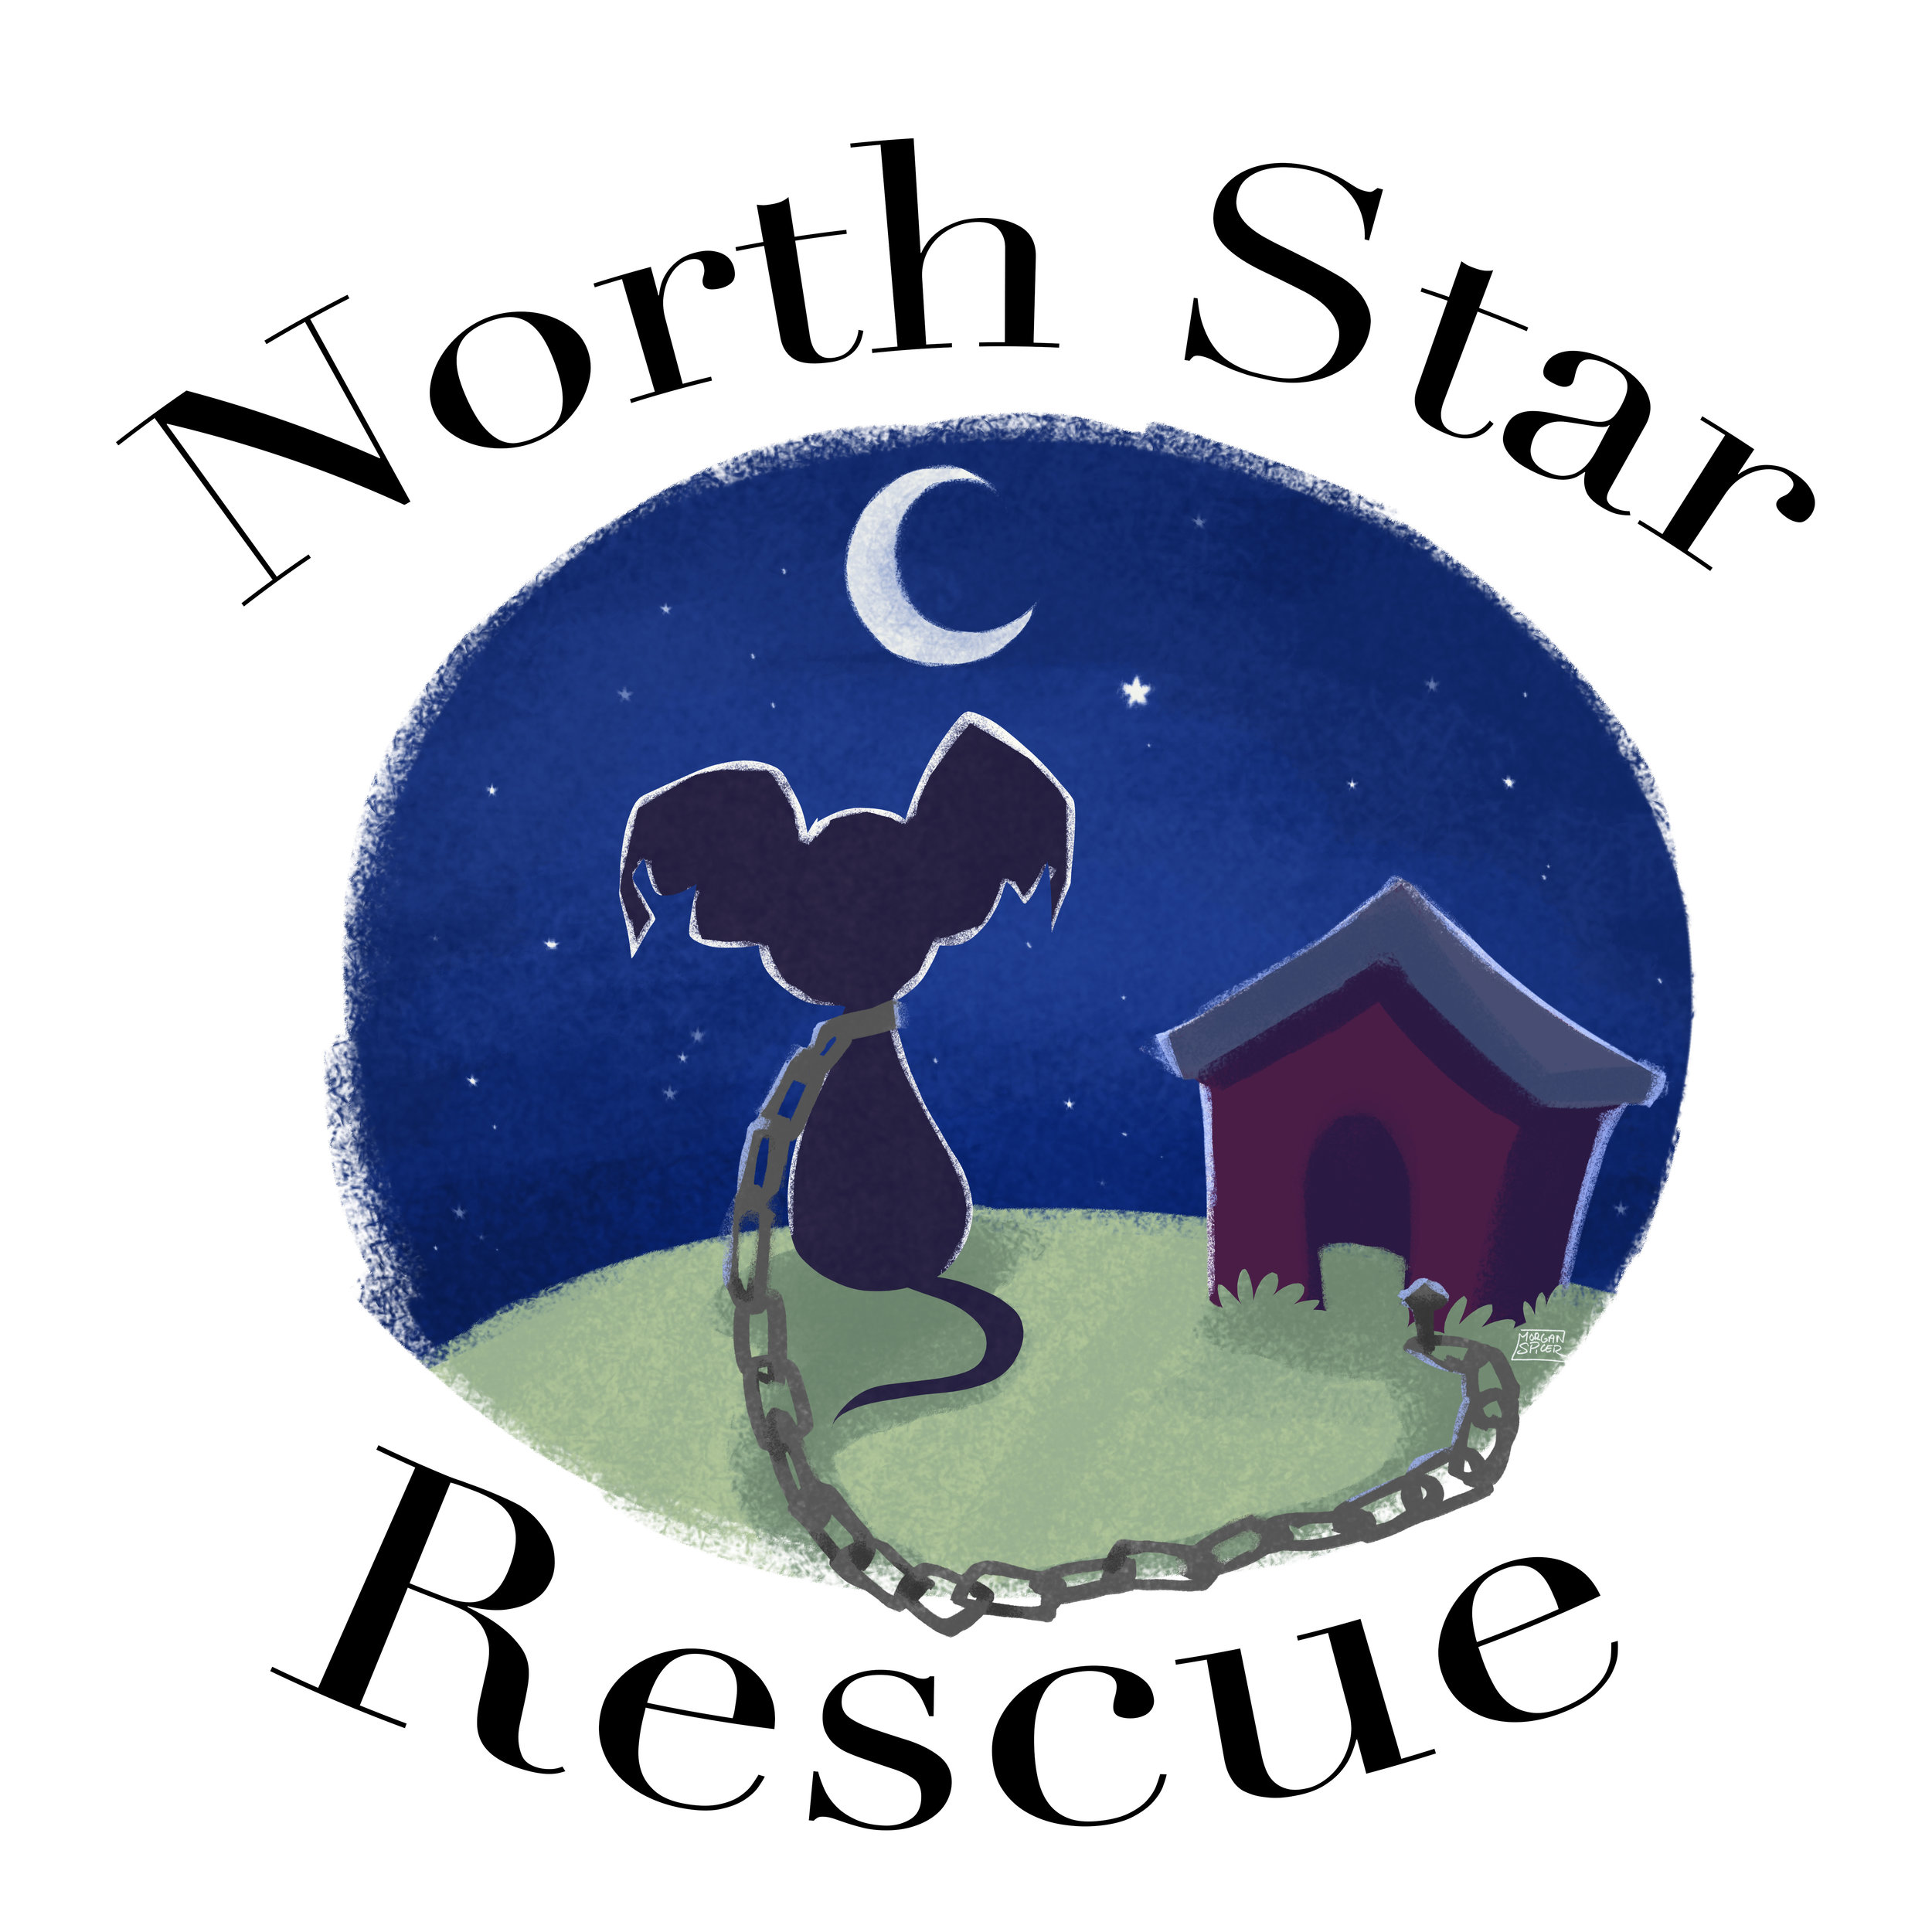 Blue_logo_NorthStar.jpg